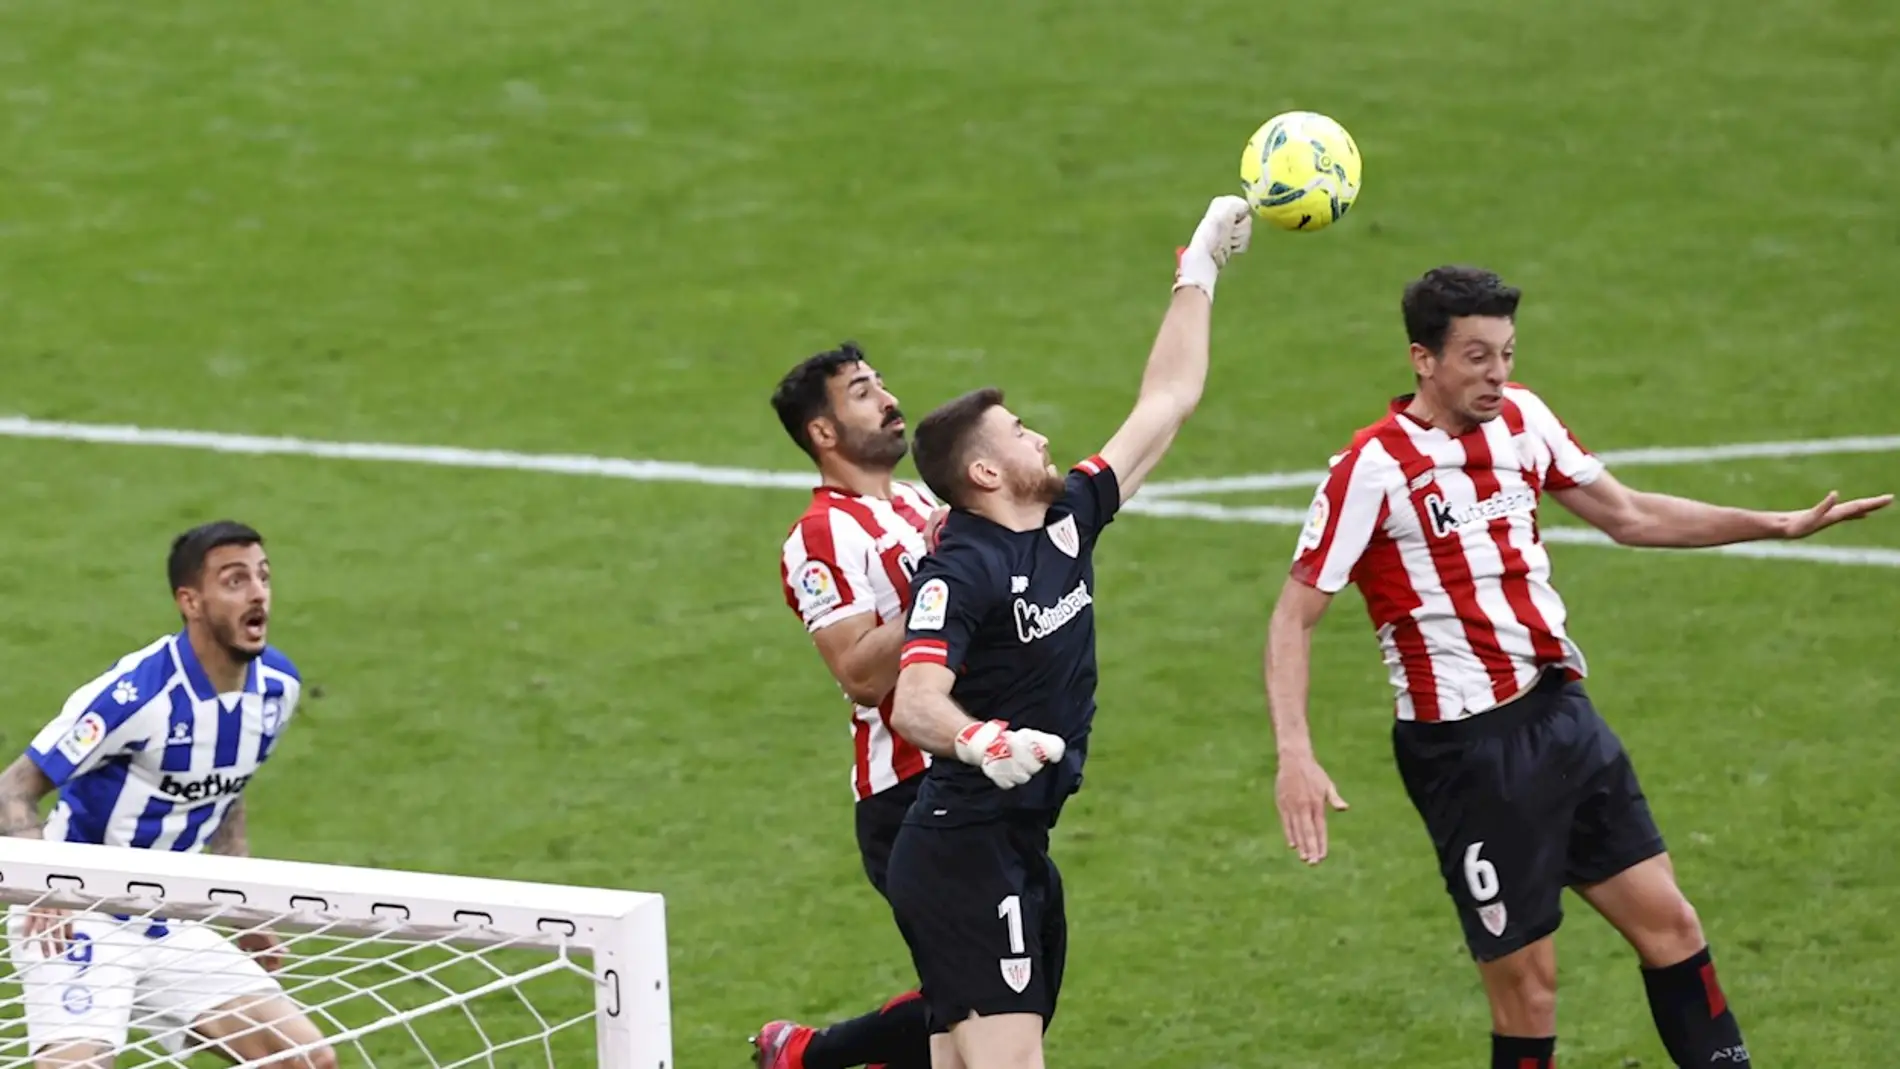  El portero del Athletic de Bilbao Unai Simón despeja un balón junto al delantero del Deportivo Alavés Joselu